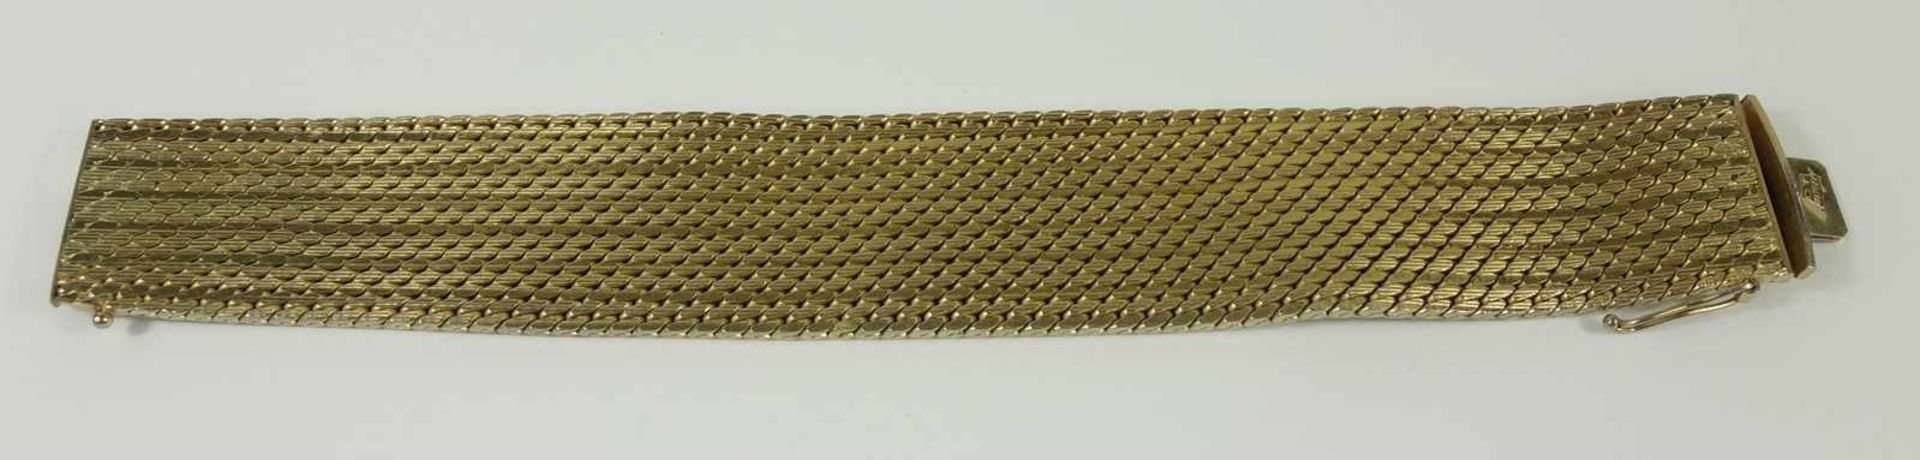 Armband, vergoldet, Steckschloss mit Sicherheitsacht, L.19,5cm, B.2,5cmwide bracelet, gold-plated- -